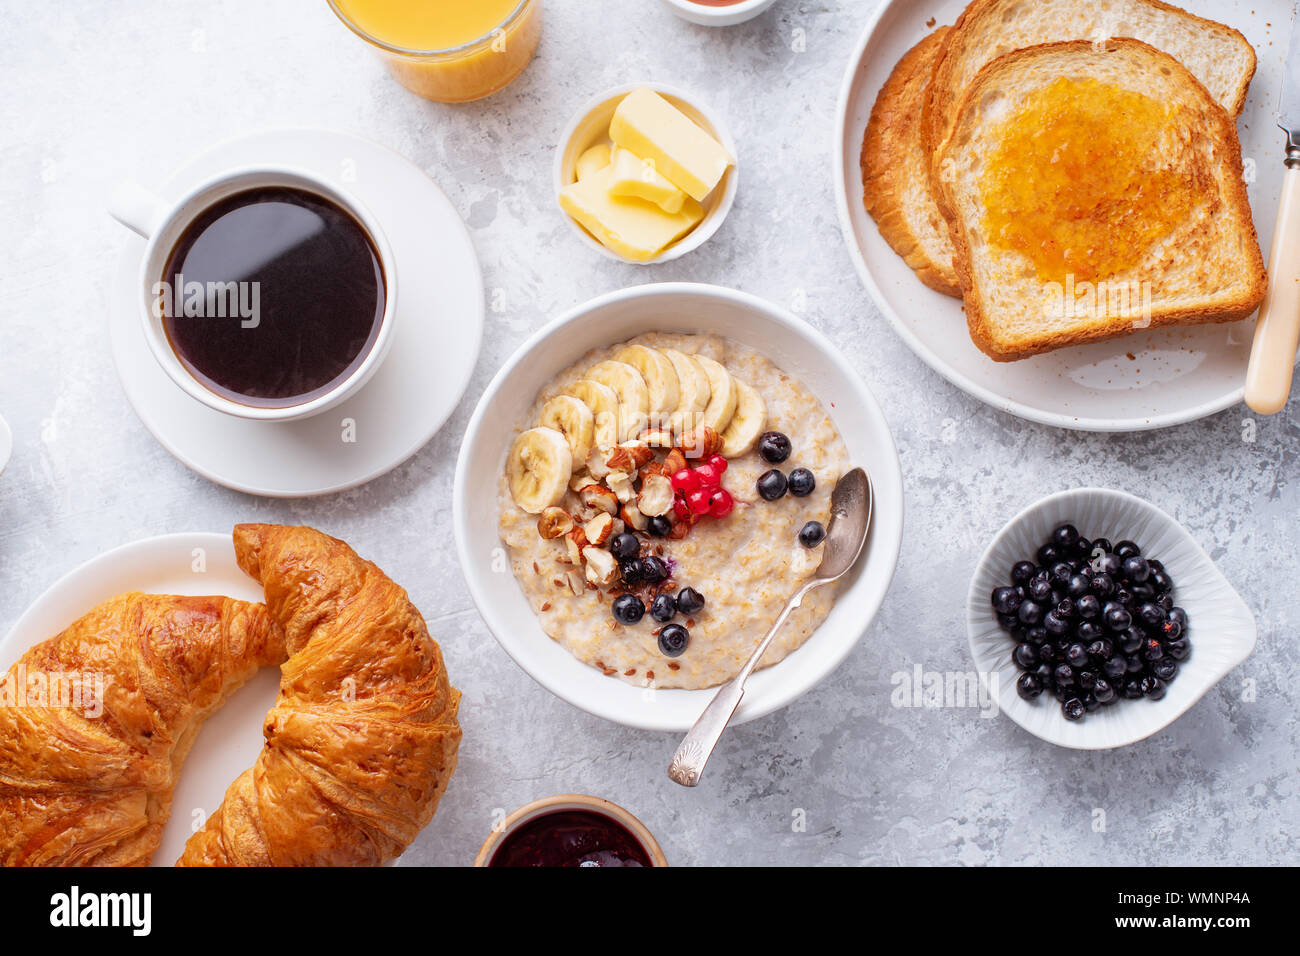 Le petit-déjeuner avec du gruau avec des baies et des noix, des croissants, des toasts avec du beurre et de la confiture, du café et du jus d'orange Banque D'Images